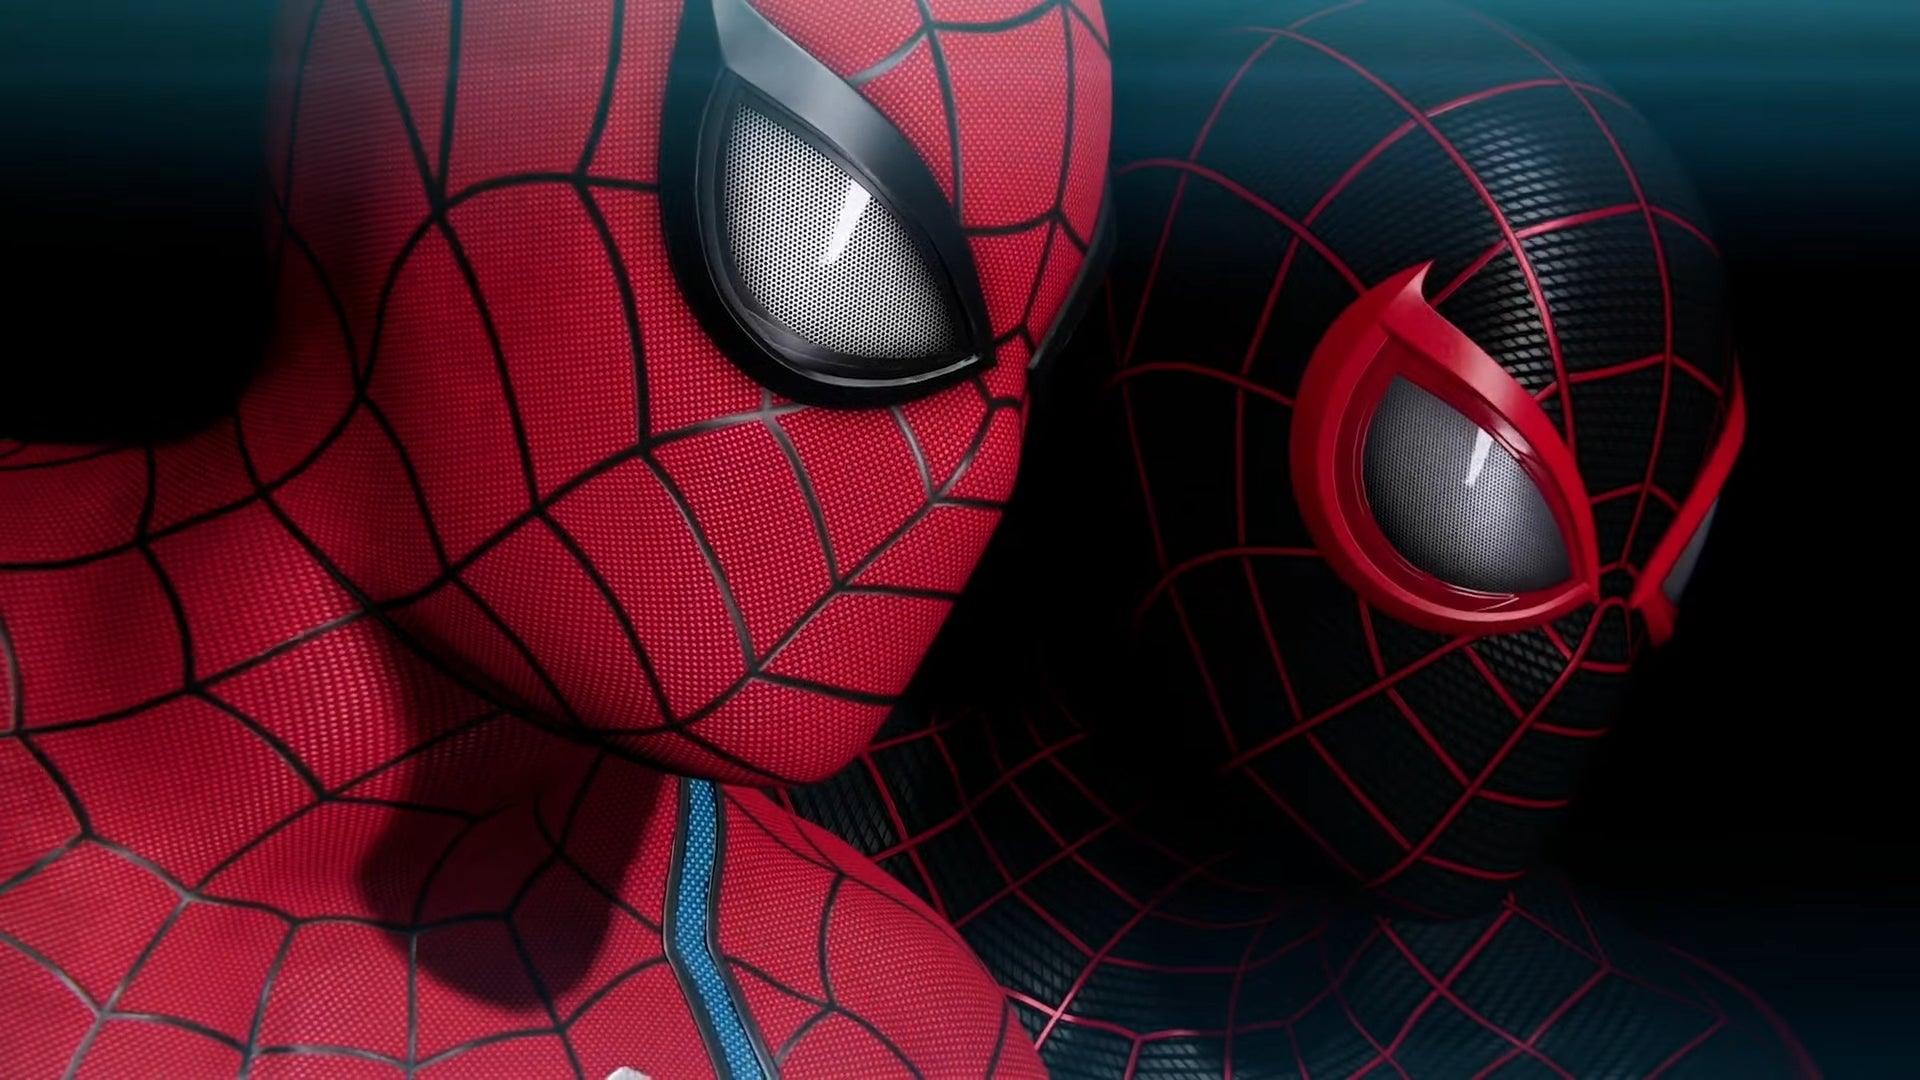 Marvel's Spider-Man 2 — A Nova Iorque da Marvel Expandida